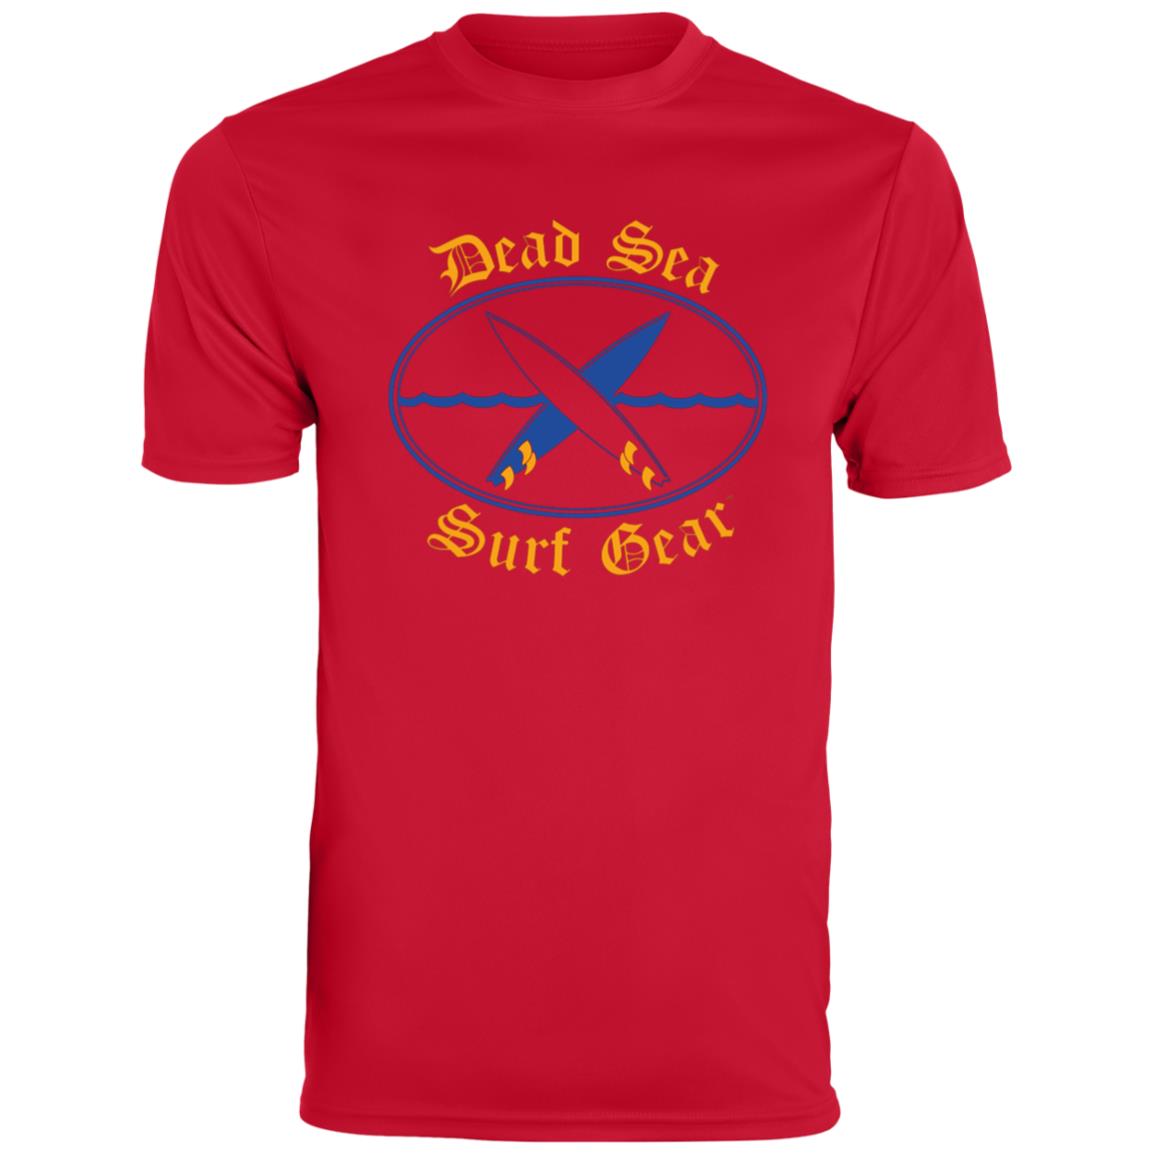 Dead Sea Surf Gear Men's Moisture-Wicking Tee